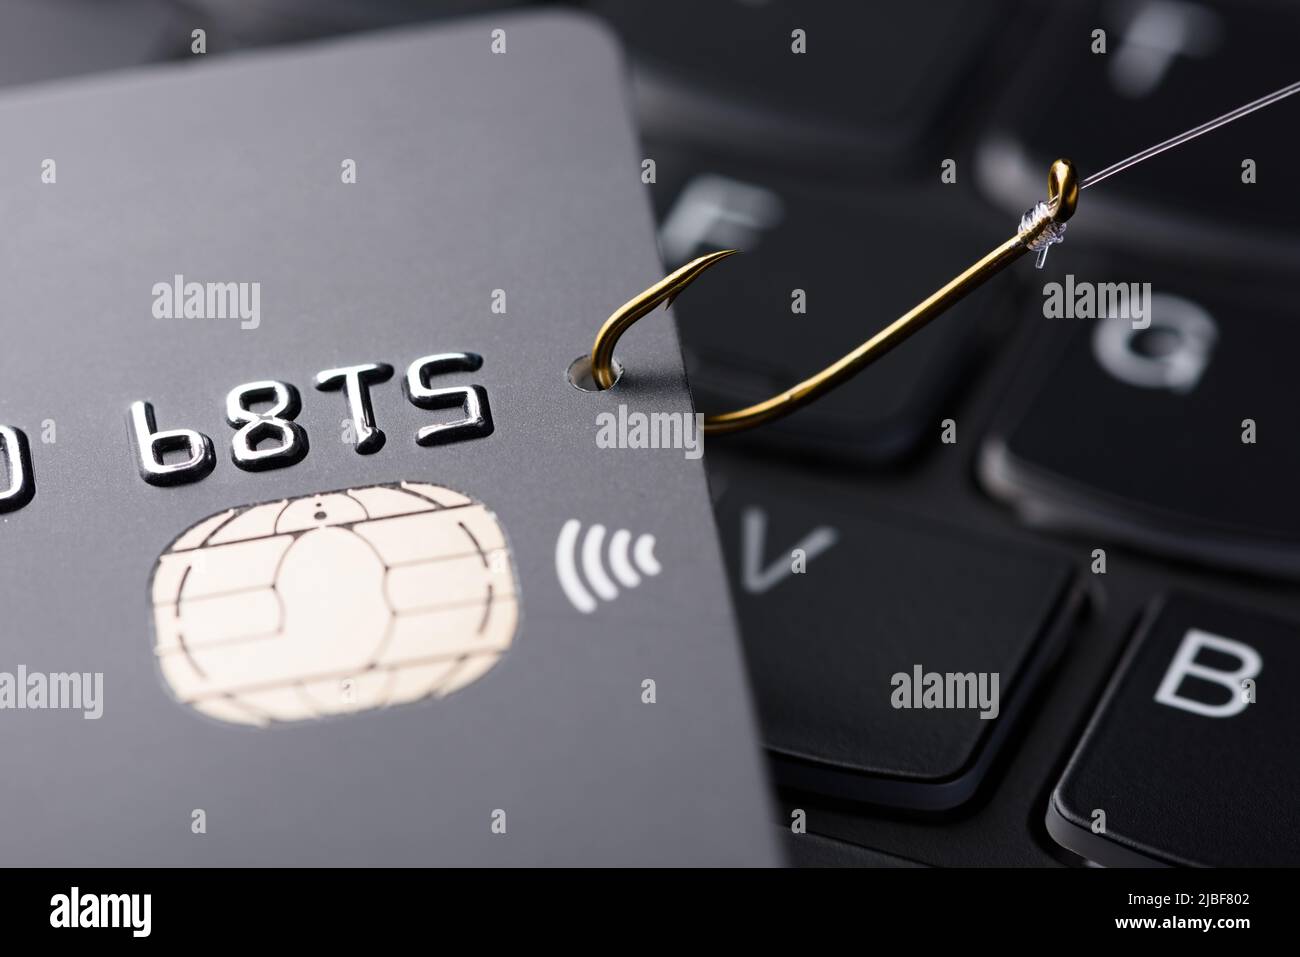 Konzept für Phishing-Betrug mit Kreditkarte. Kreditkartendatendiebstahl, Karte von Hacker-Cyber-kriminellen auf Angelhaken auf der Tastatur gehakt. Stockfoto